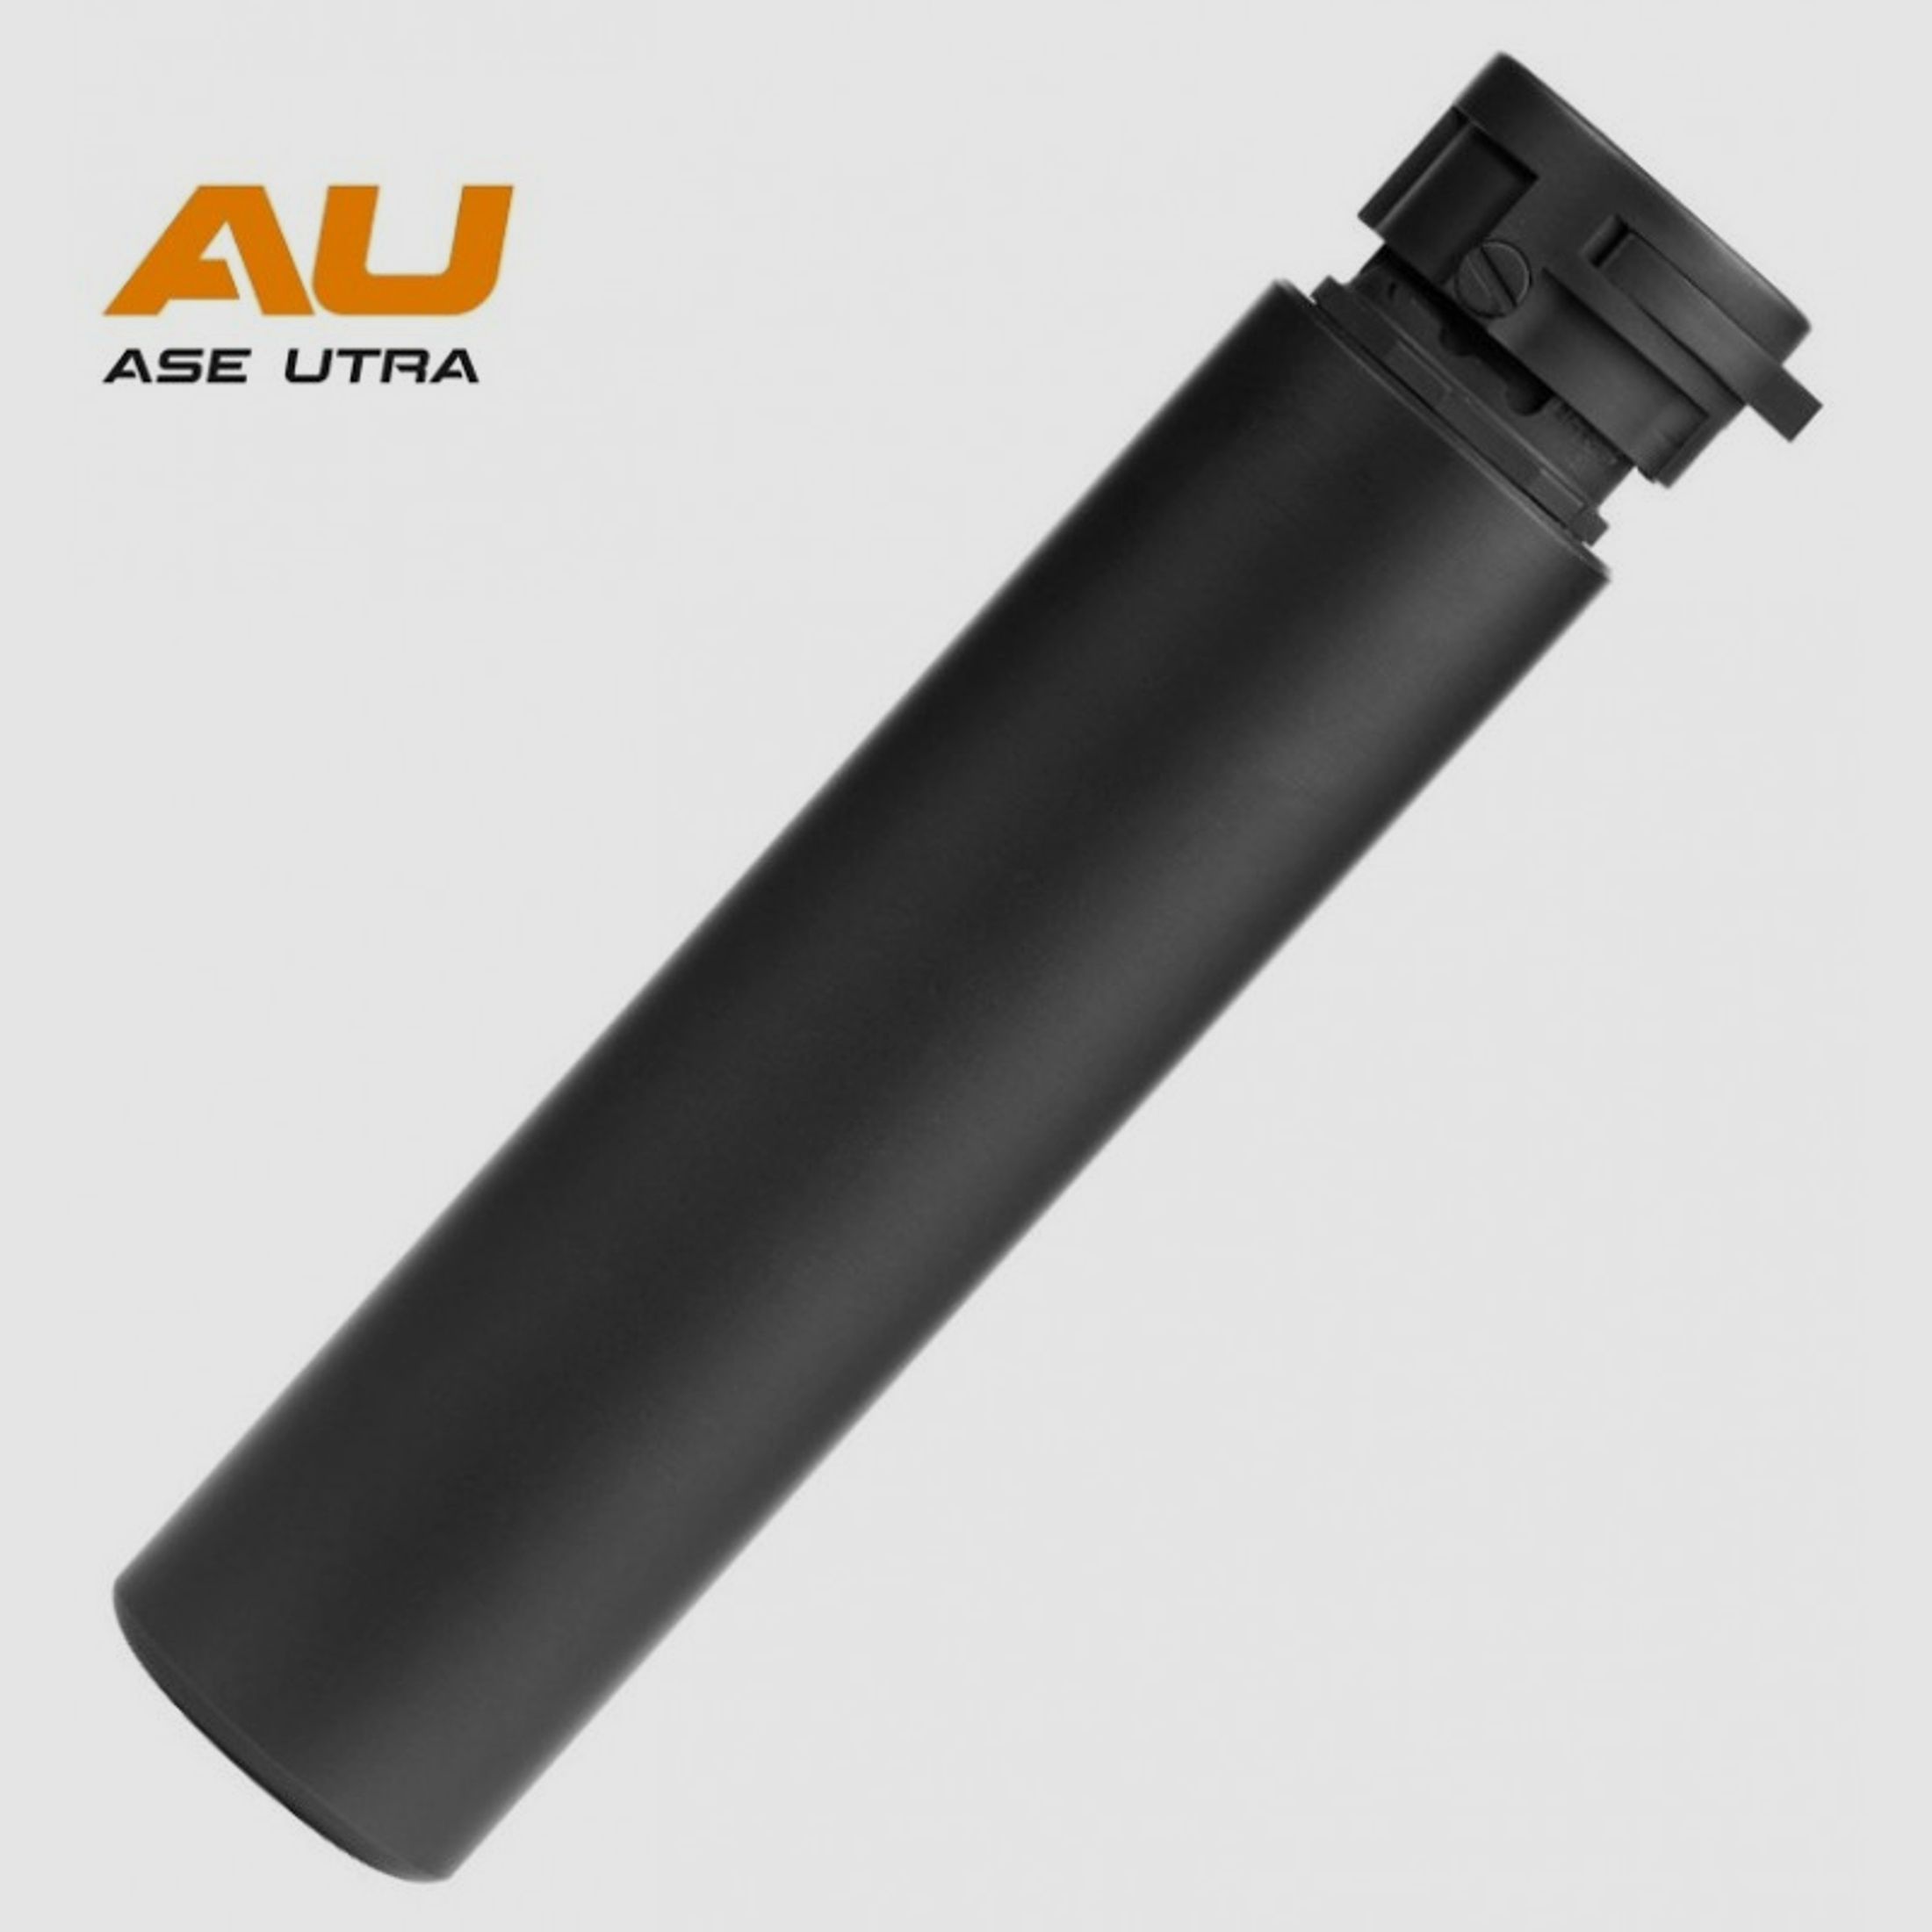 Ase Utra S Serie SL8i -BL .300 BLK Schalldämpfer(Cerakote-Beschichtung)